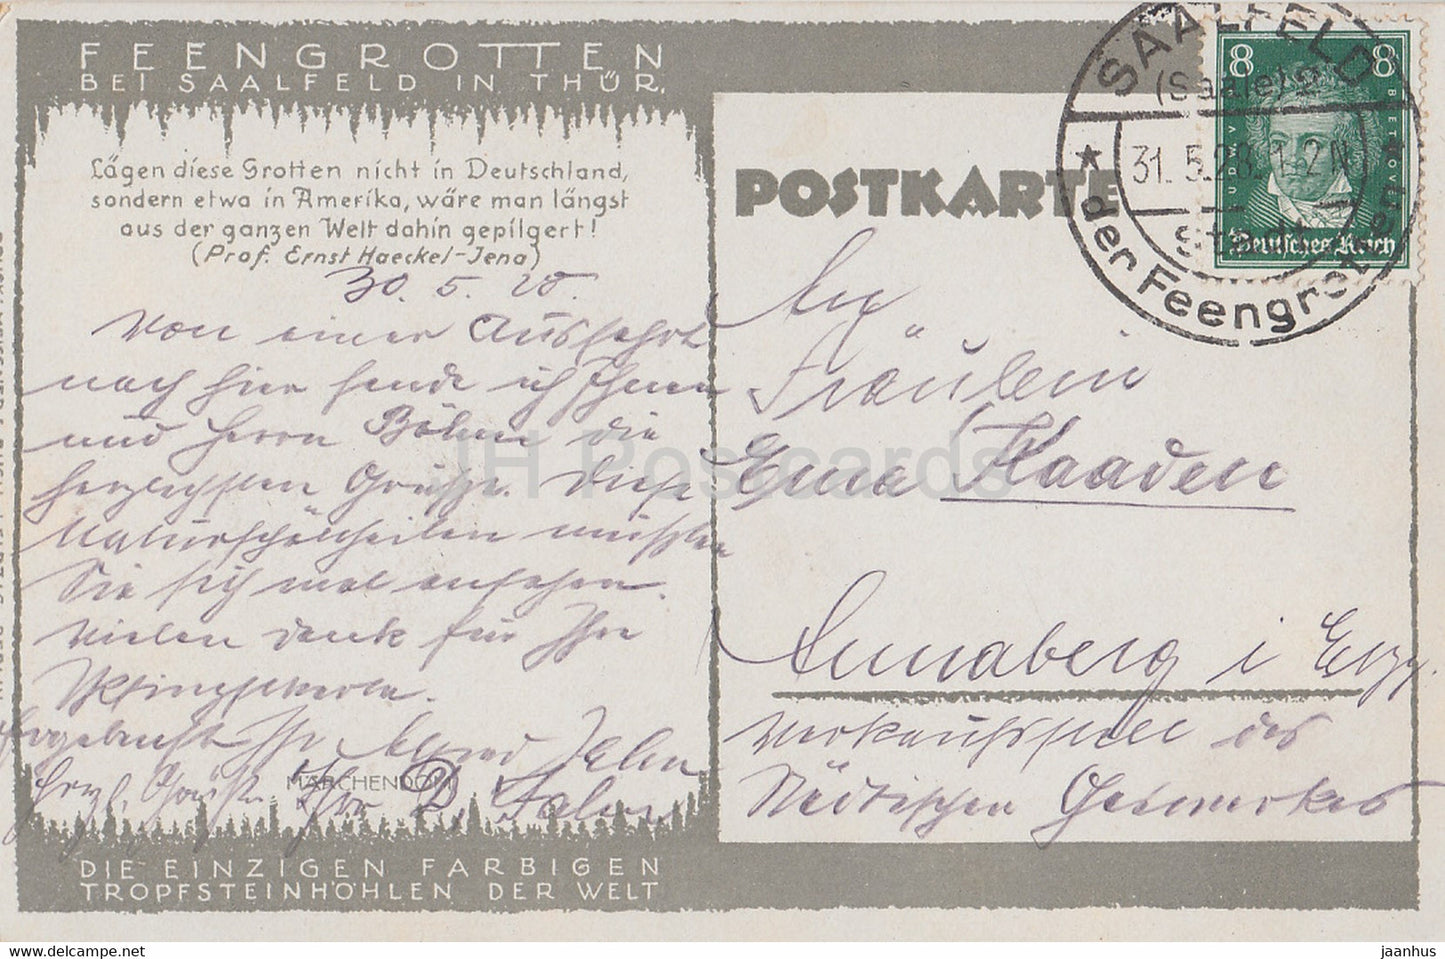 Feengrotten von Saalfeld in Th - Marchendom - Höhle - alte Postkarte - 1928 - Deutschland - gebraucht